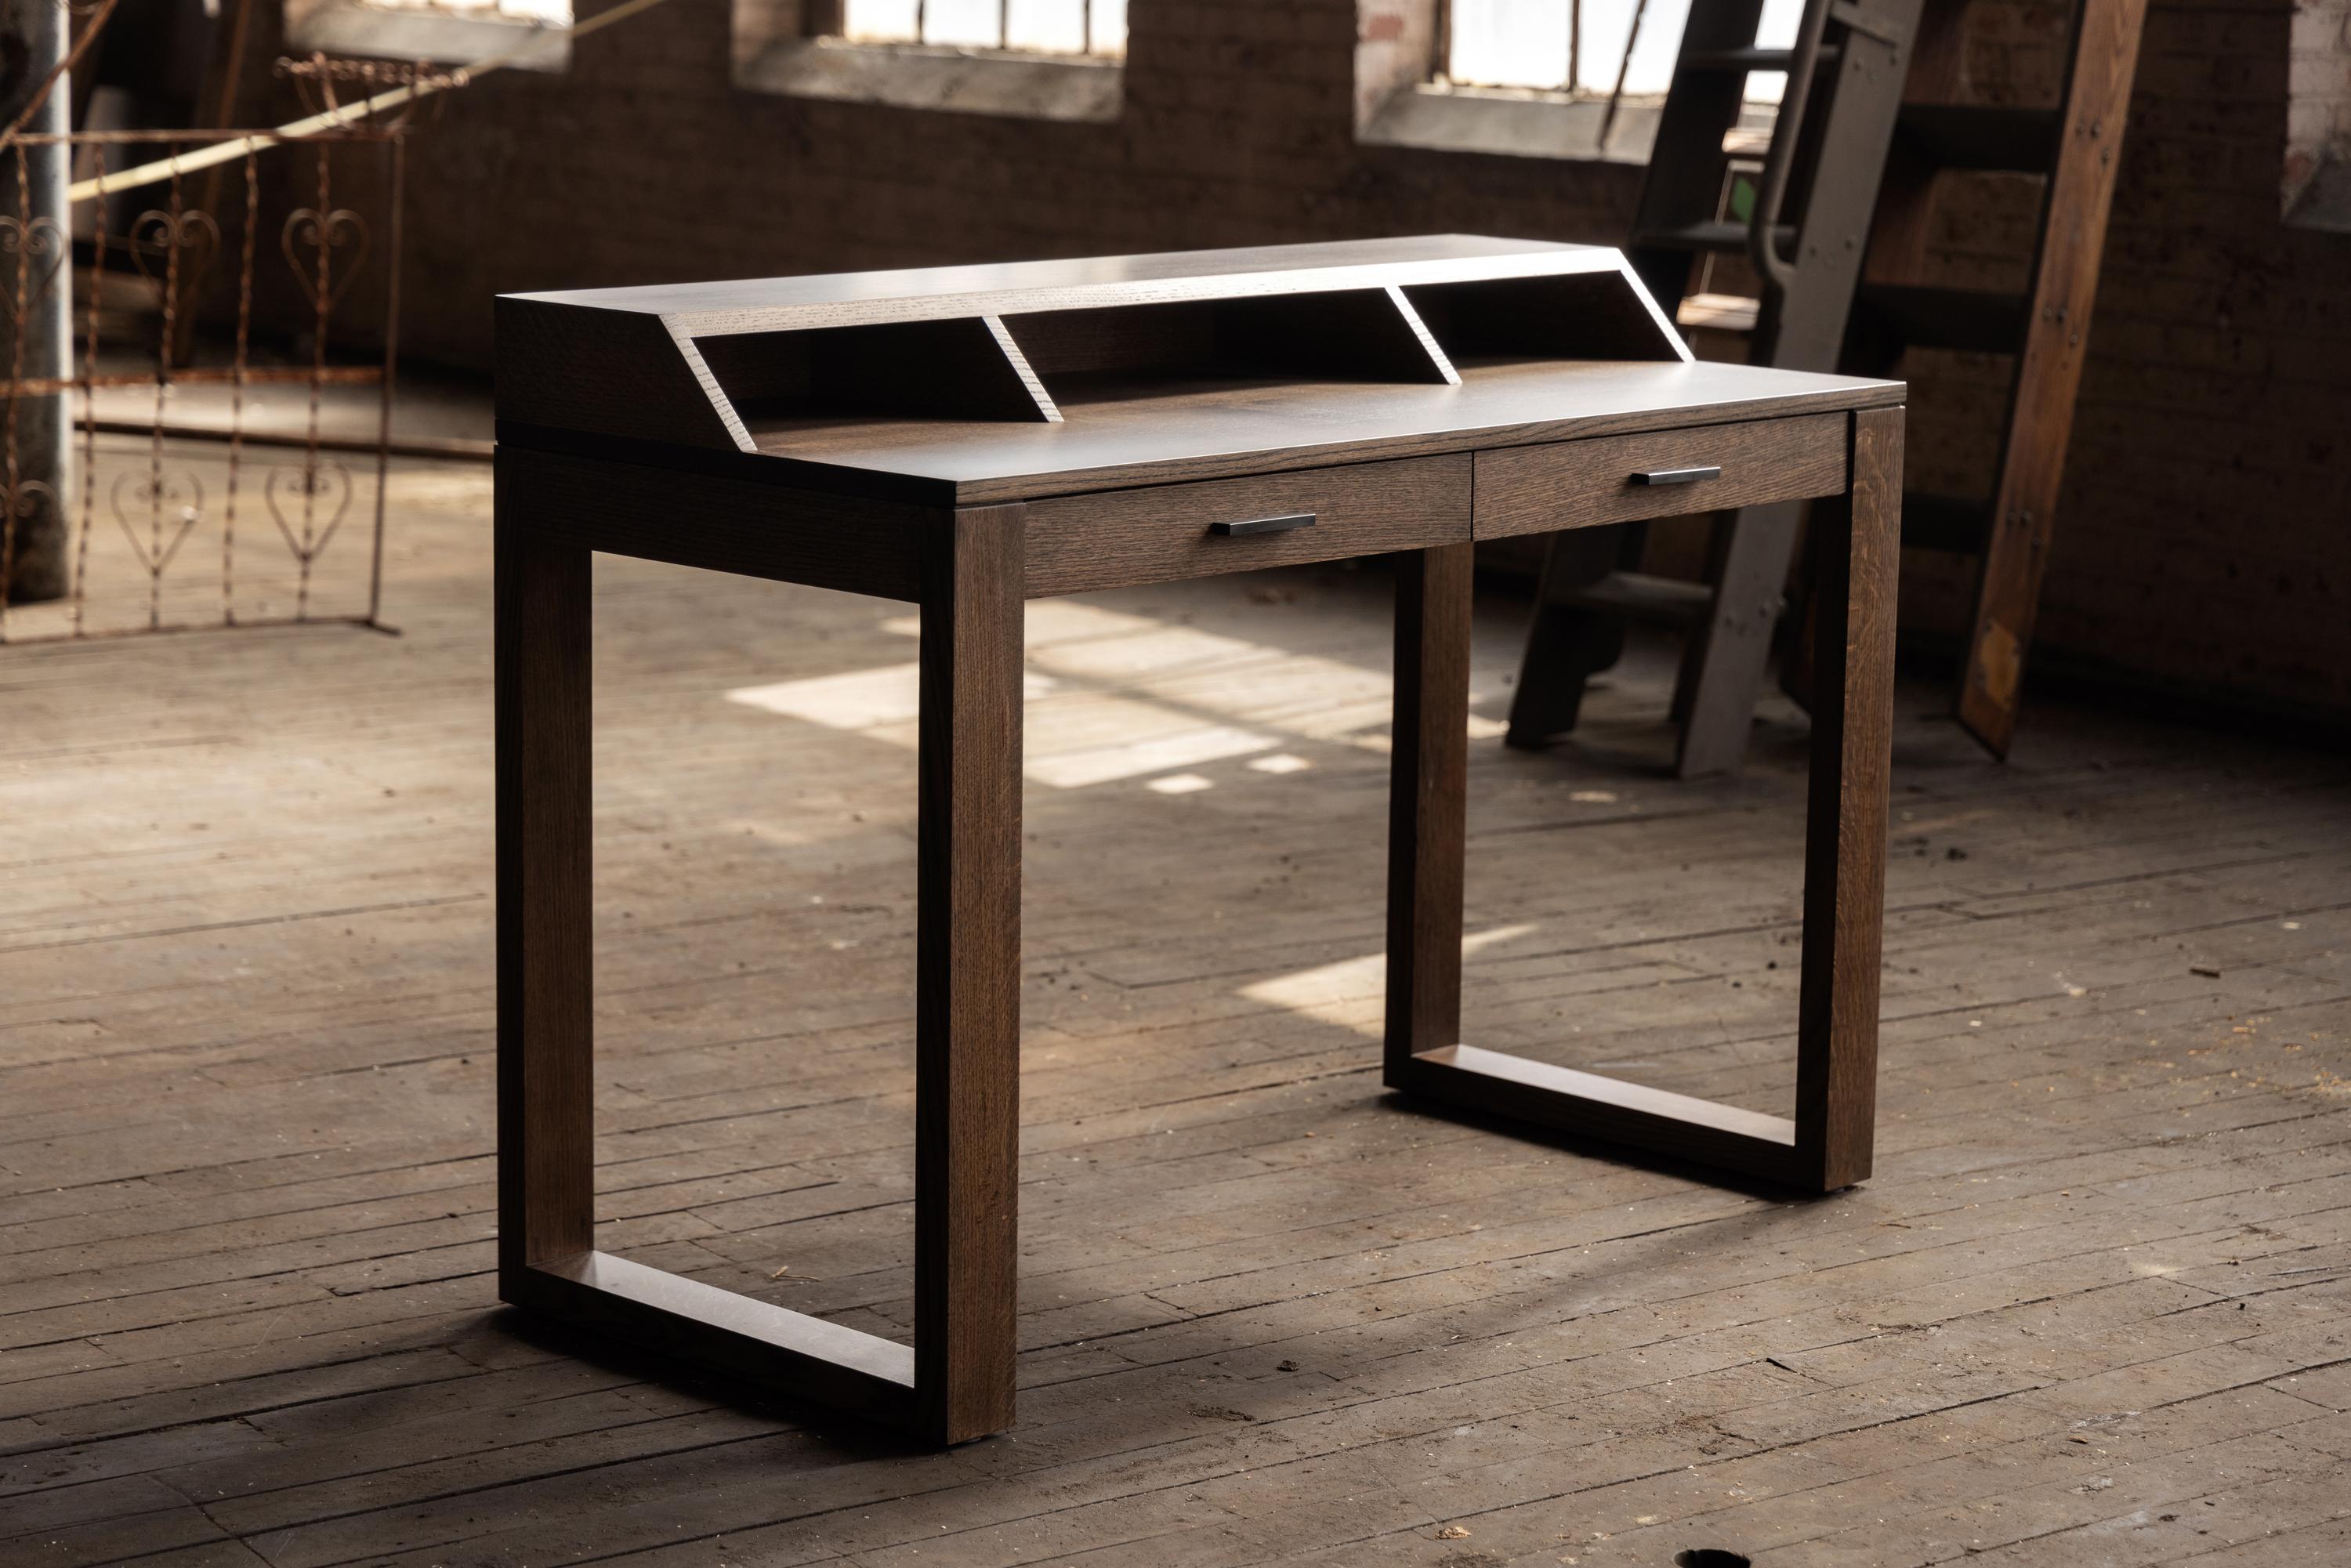 Dieser klassische Schreibtisch wurde in Handarbeit aus Hartholz aus dem Stadtwald von Birmingham gefertigt. Für Ihr Heimbüro, Ihren Computertisch oder einen Platz, an dem Sie bequem von zu Hause aus arbeiten und sich auf einen Roman oder eine